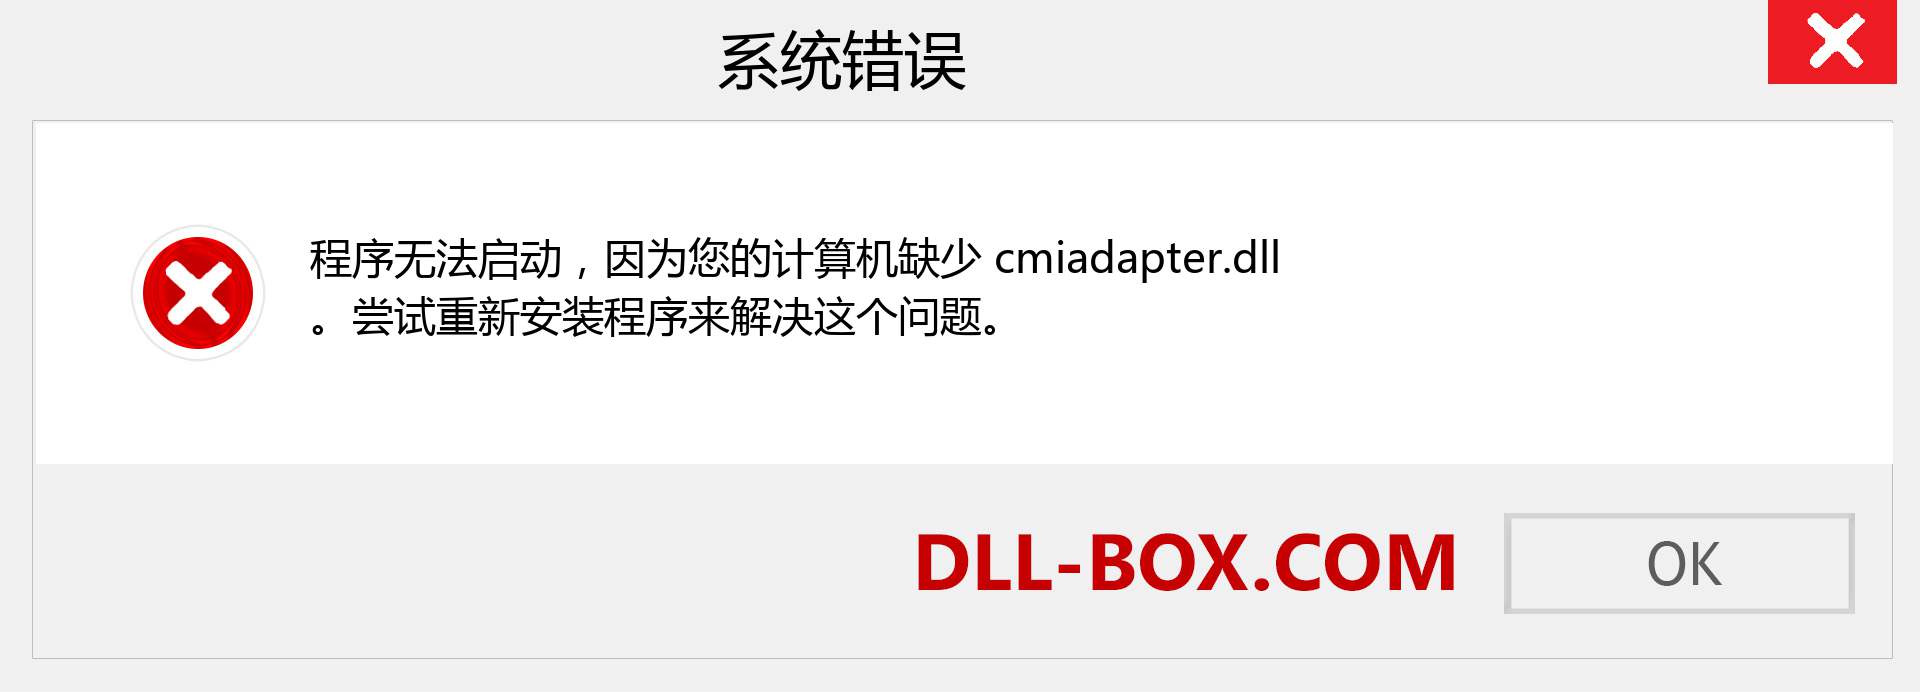 cmiadapter.dll 文件丢失？。 适用于 Windows 7、8、10 的下载 - 修复 Windows、照片、图像上的 cmiadapter dll 丢失错误